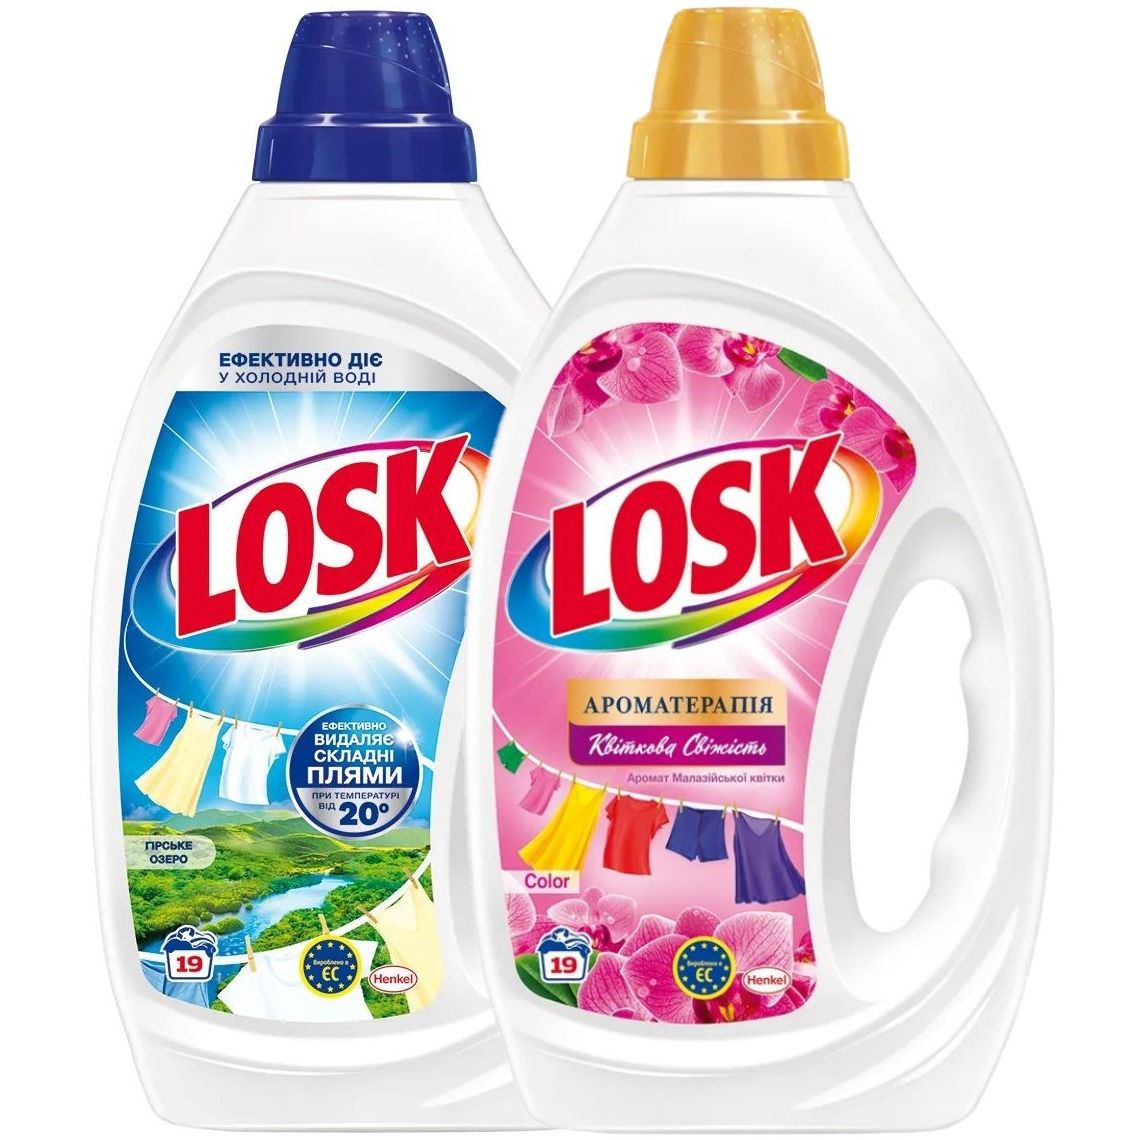 Набор Losk: Гель для стирки Losk Color Ароматерапия Эфирные масла и аромат Малайзийского цветка, 855 мл + Гель для стирки Losk для белых вещей Горное озеро, 855 мл - фото 1